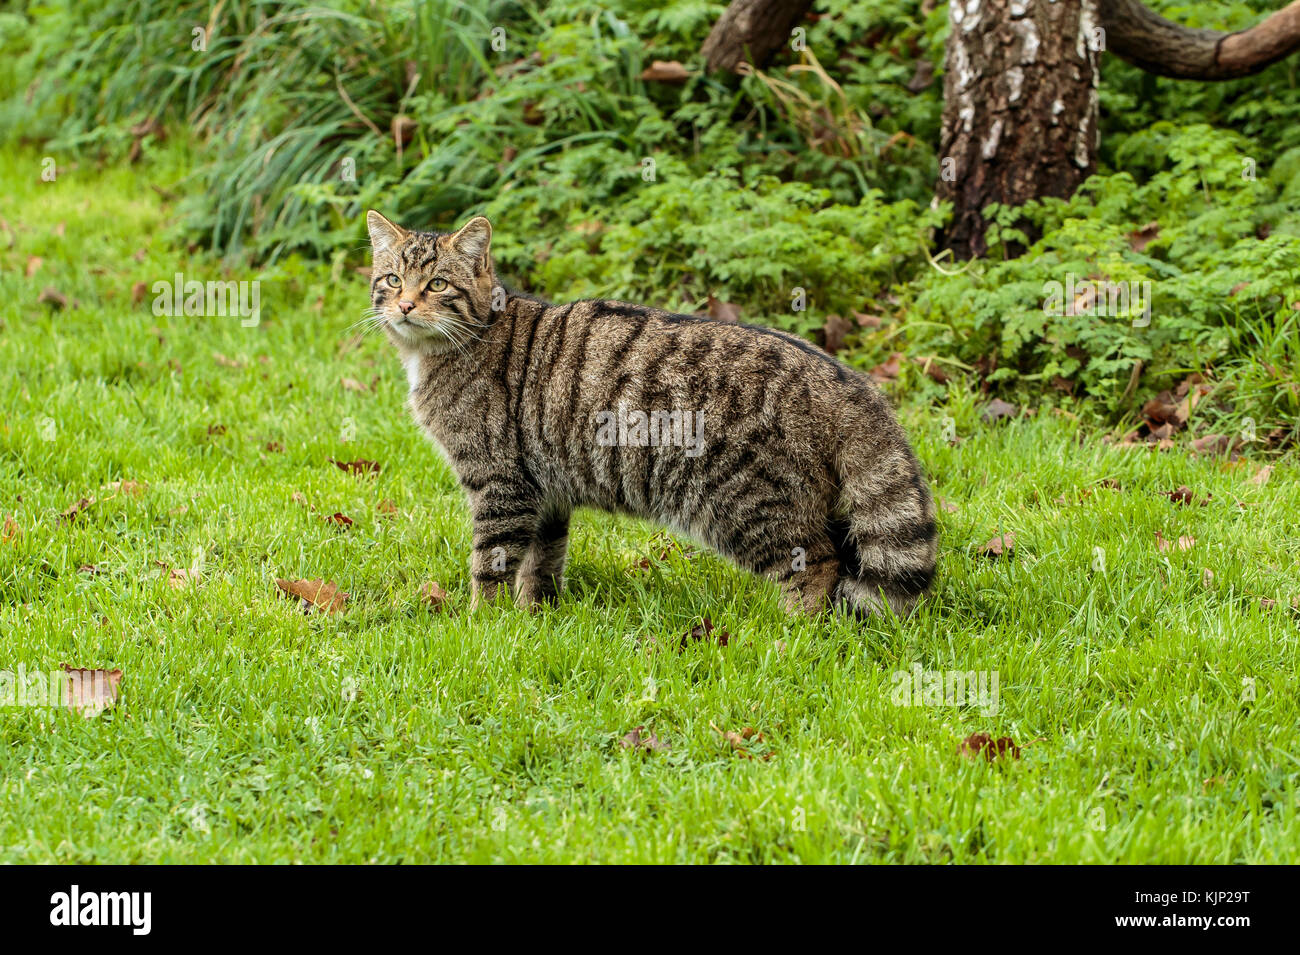 Un chat sauvage écossais des Highlands ou Tiger Banque D'Images